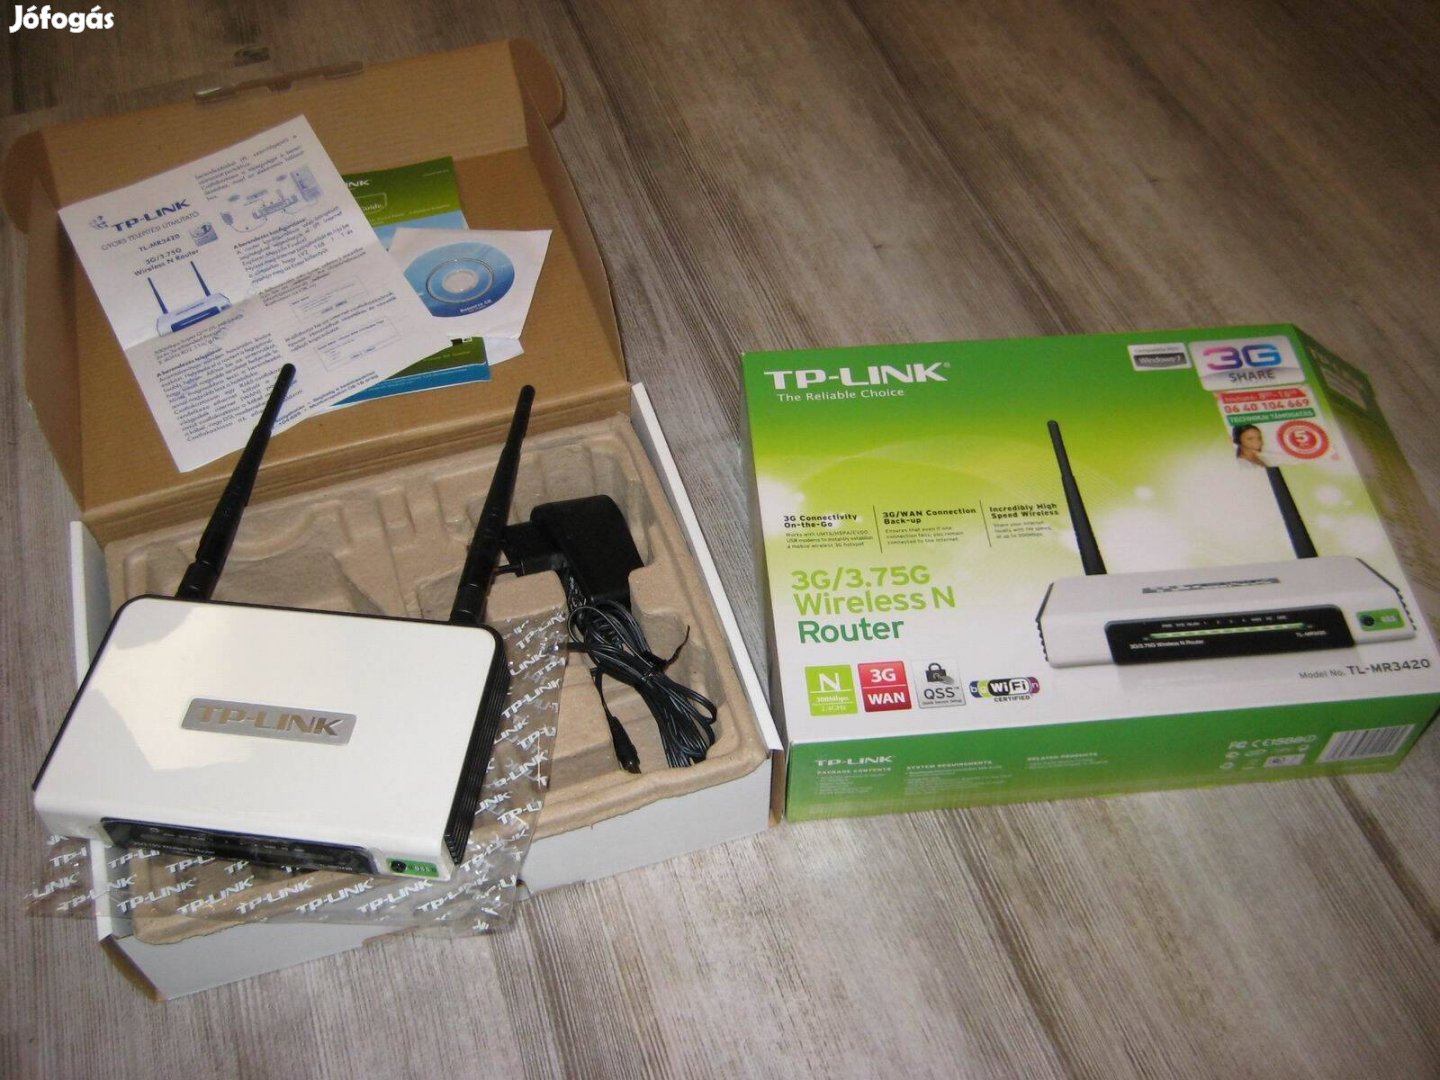 TP-Link TL-MR3420 300Mbps 3G/3,75G WiFi router újszerű, hibátlan